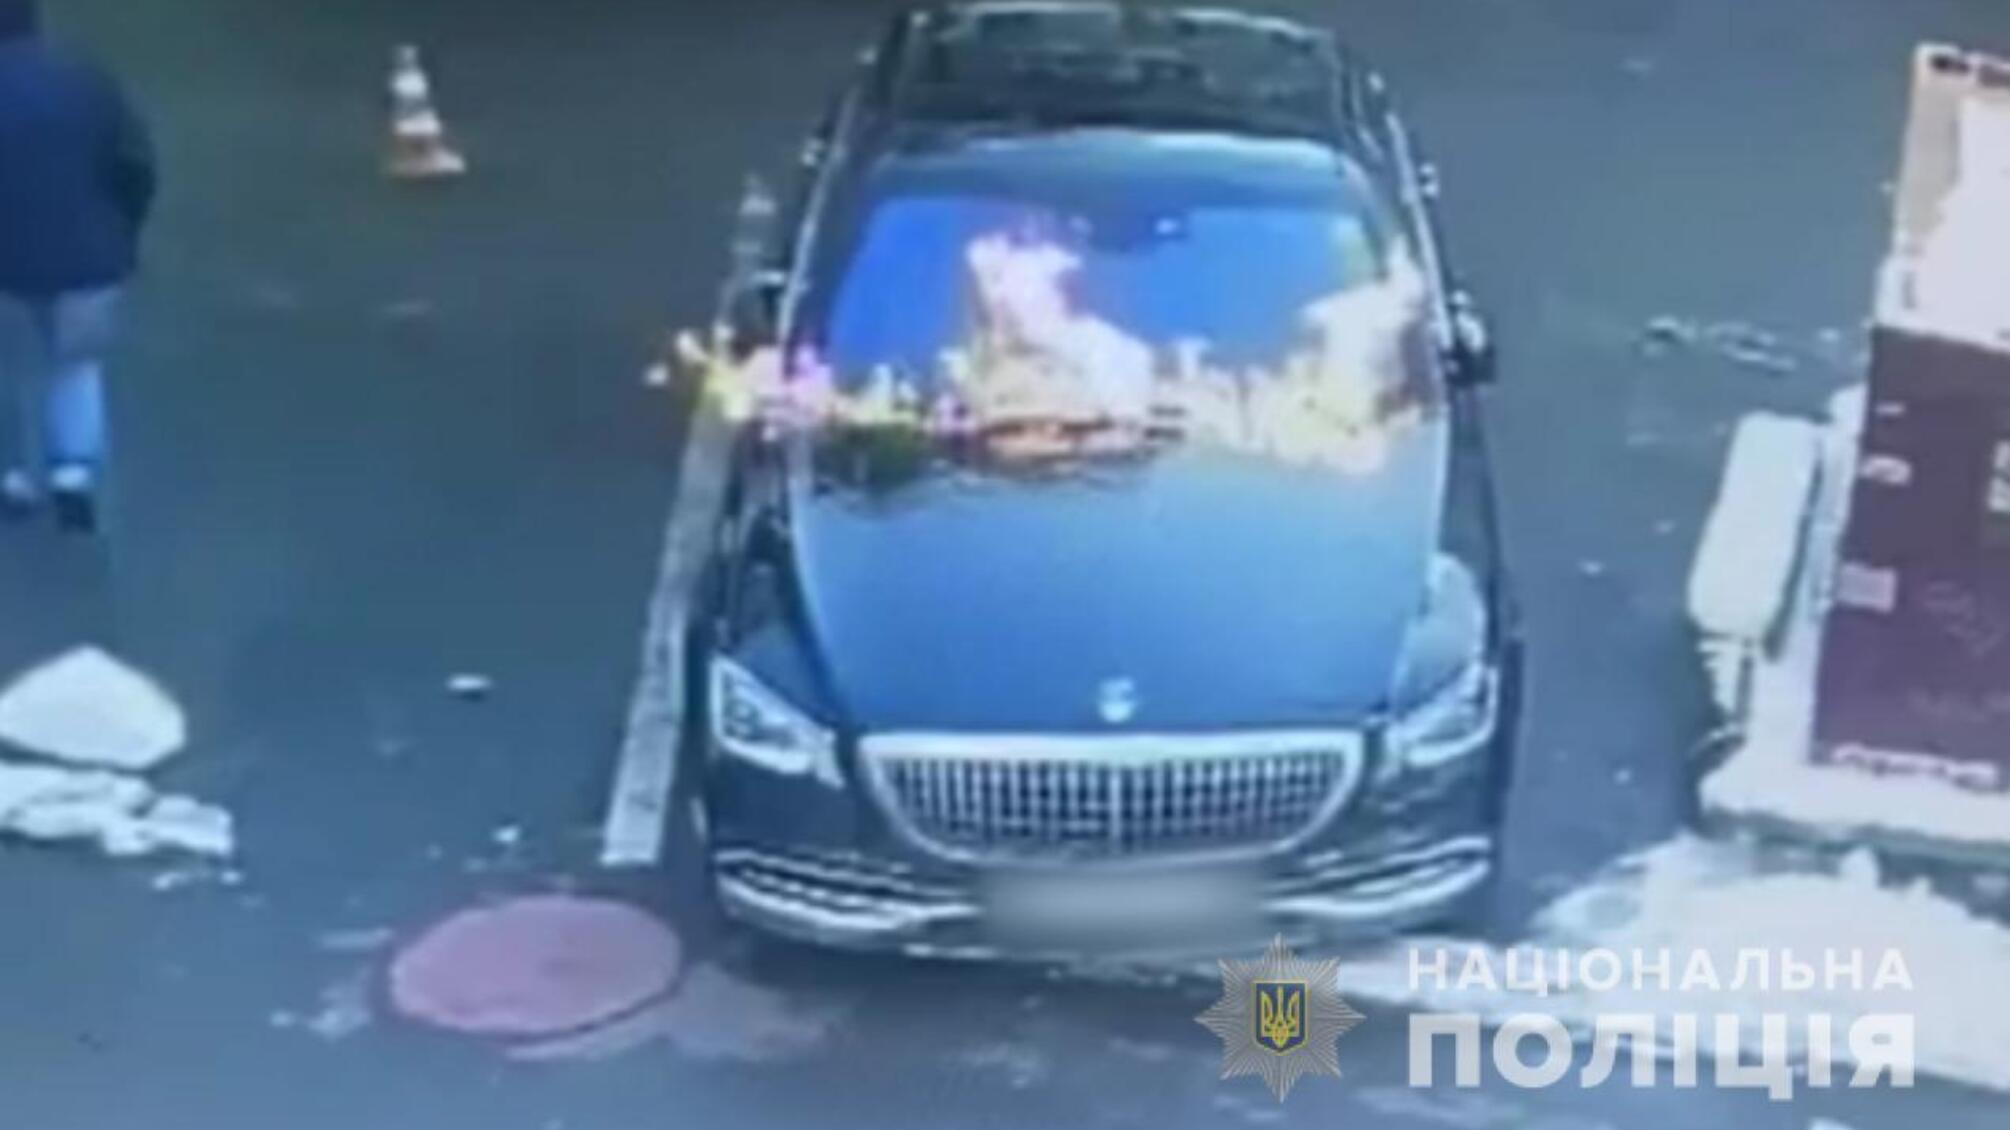 Одеські поліцейські викрили двох чоловіків у підпалі автомобіля місцевого жителя